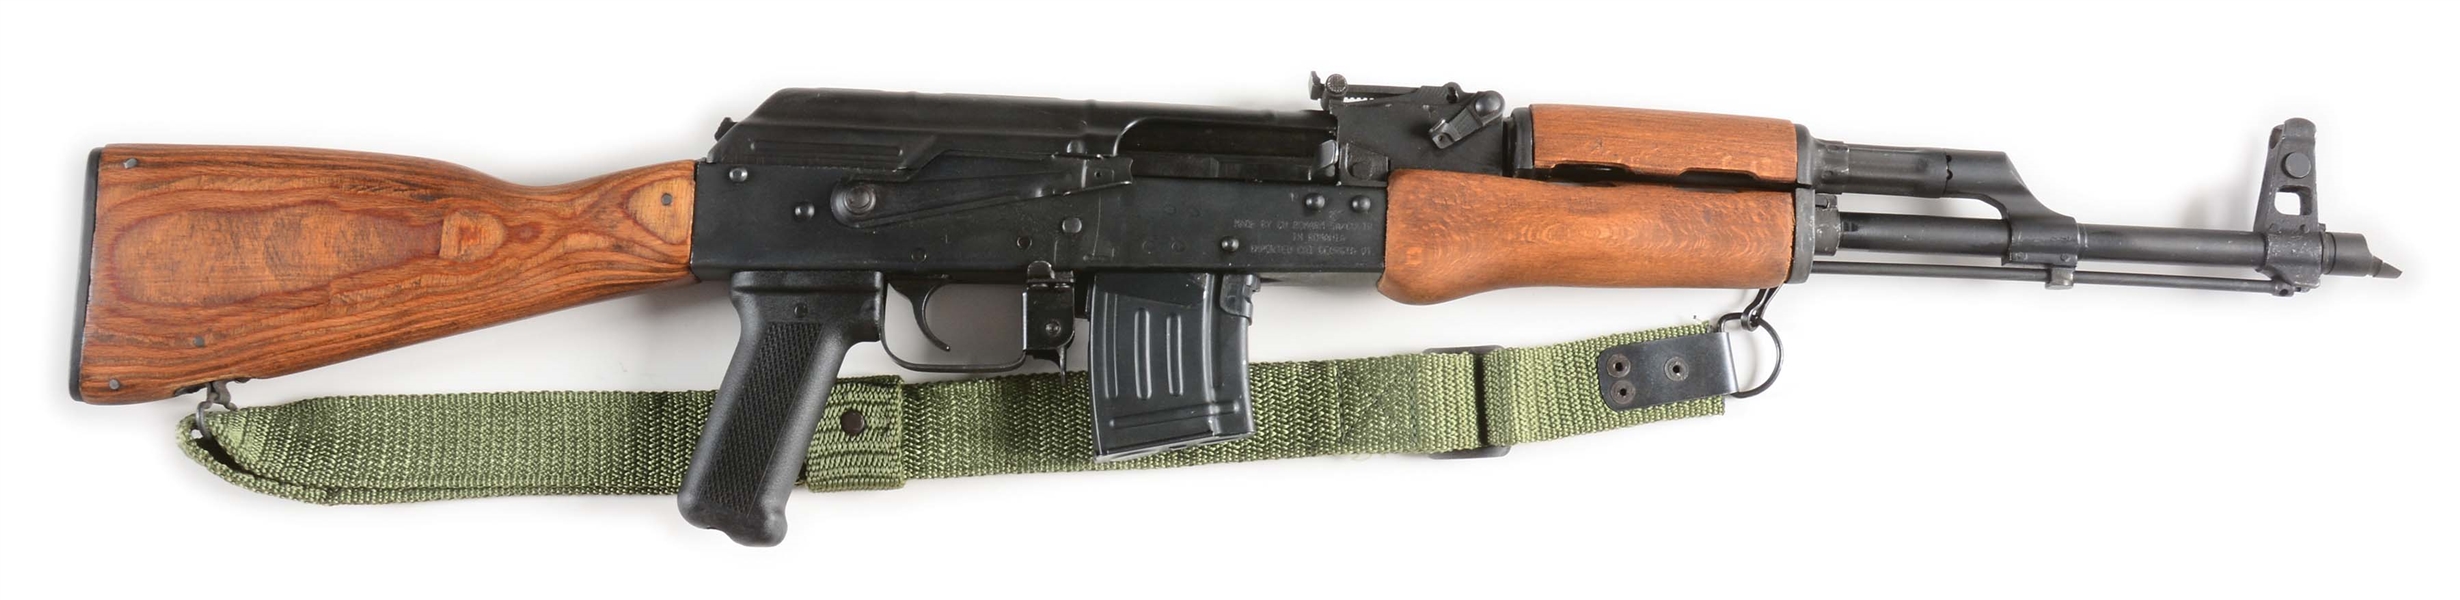 (M) ROMANIAN WASR-10 AK PATTERN SEMI-AUTOMATIC RIFLE.